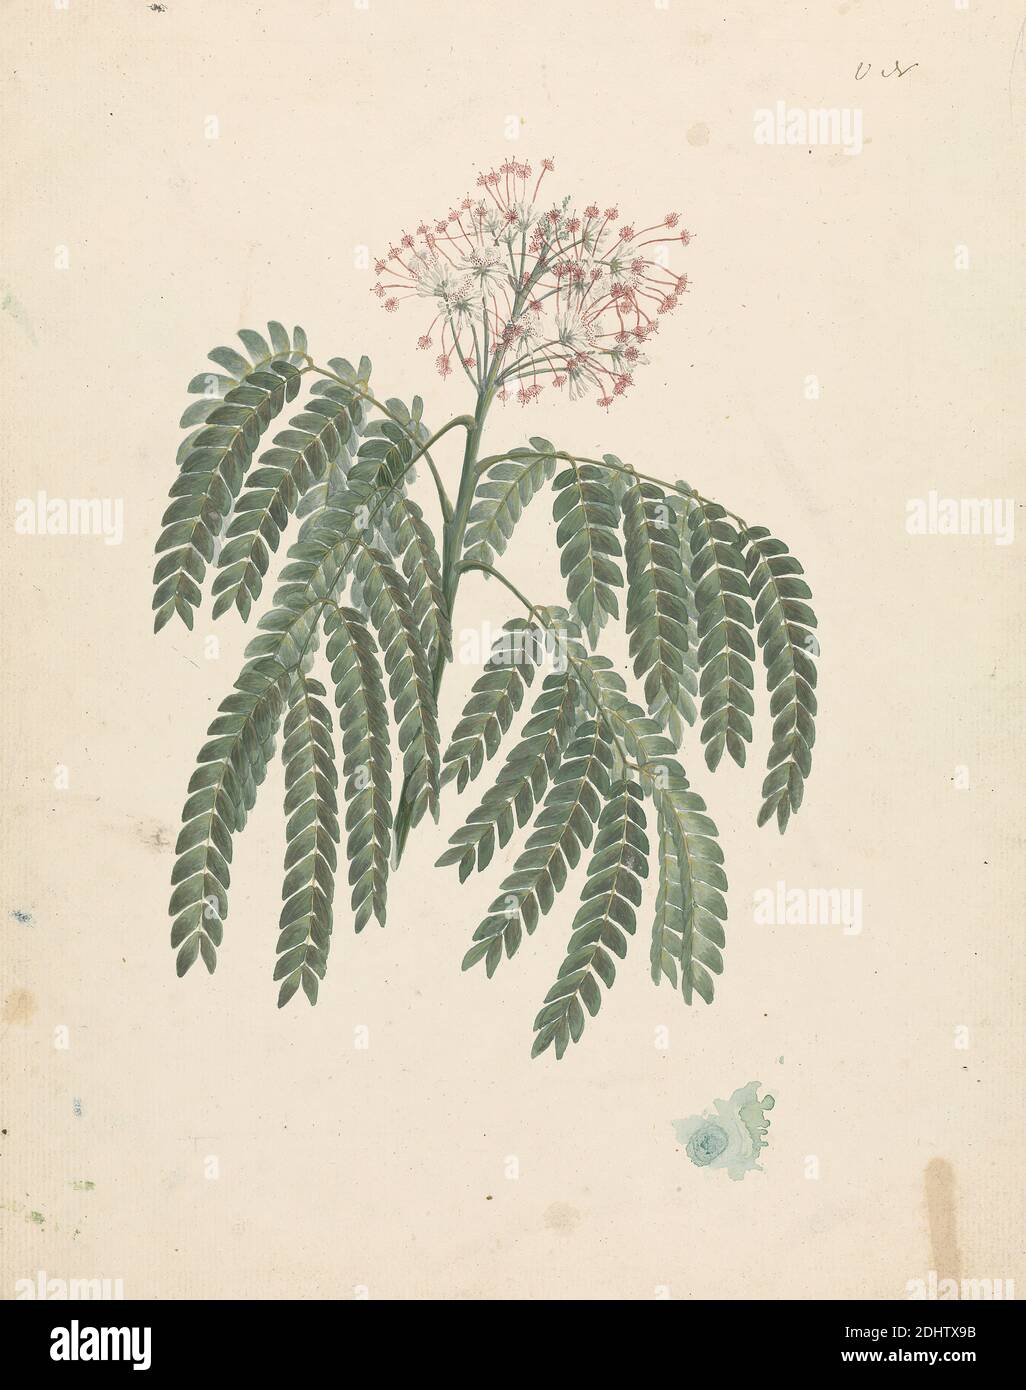 Albizia gummifera (J.F. Gmel.) C.A. SM. (Arbre d'Albizia gommeux) : dessin fini de la tête de pousse à fleurs, avec détails de l'inflorescence, des fleurons et des feuilles, Luigi Balugani, 1737–1770, italien, anciennement James Bruce, 1730–1794, britannique, ca. 1768, aquarelle, gouache et graphite sur papier crème, moyennement texturé, feuille: 12 3/8 × 9 3/4 pouces (31.4 × 24.8 cm), sujet botanique Banque D'Images